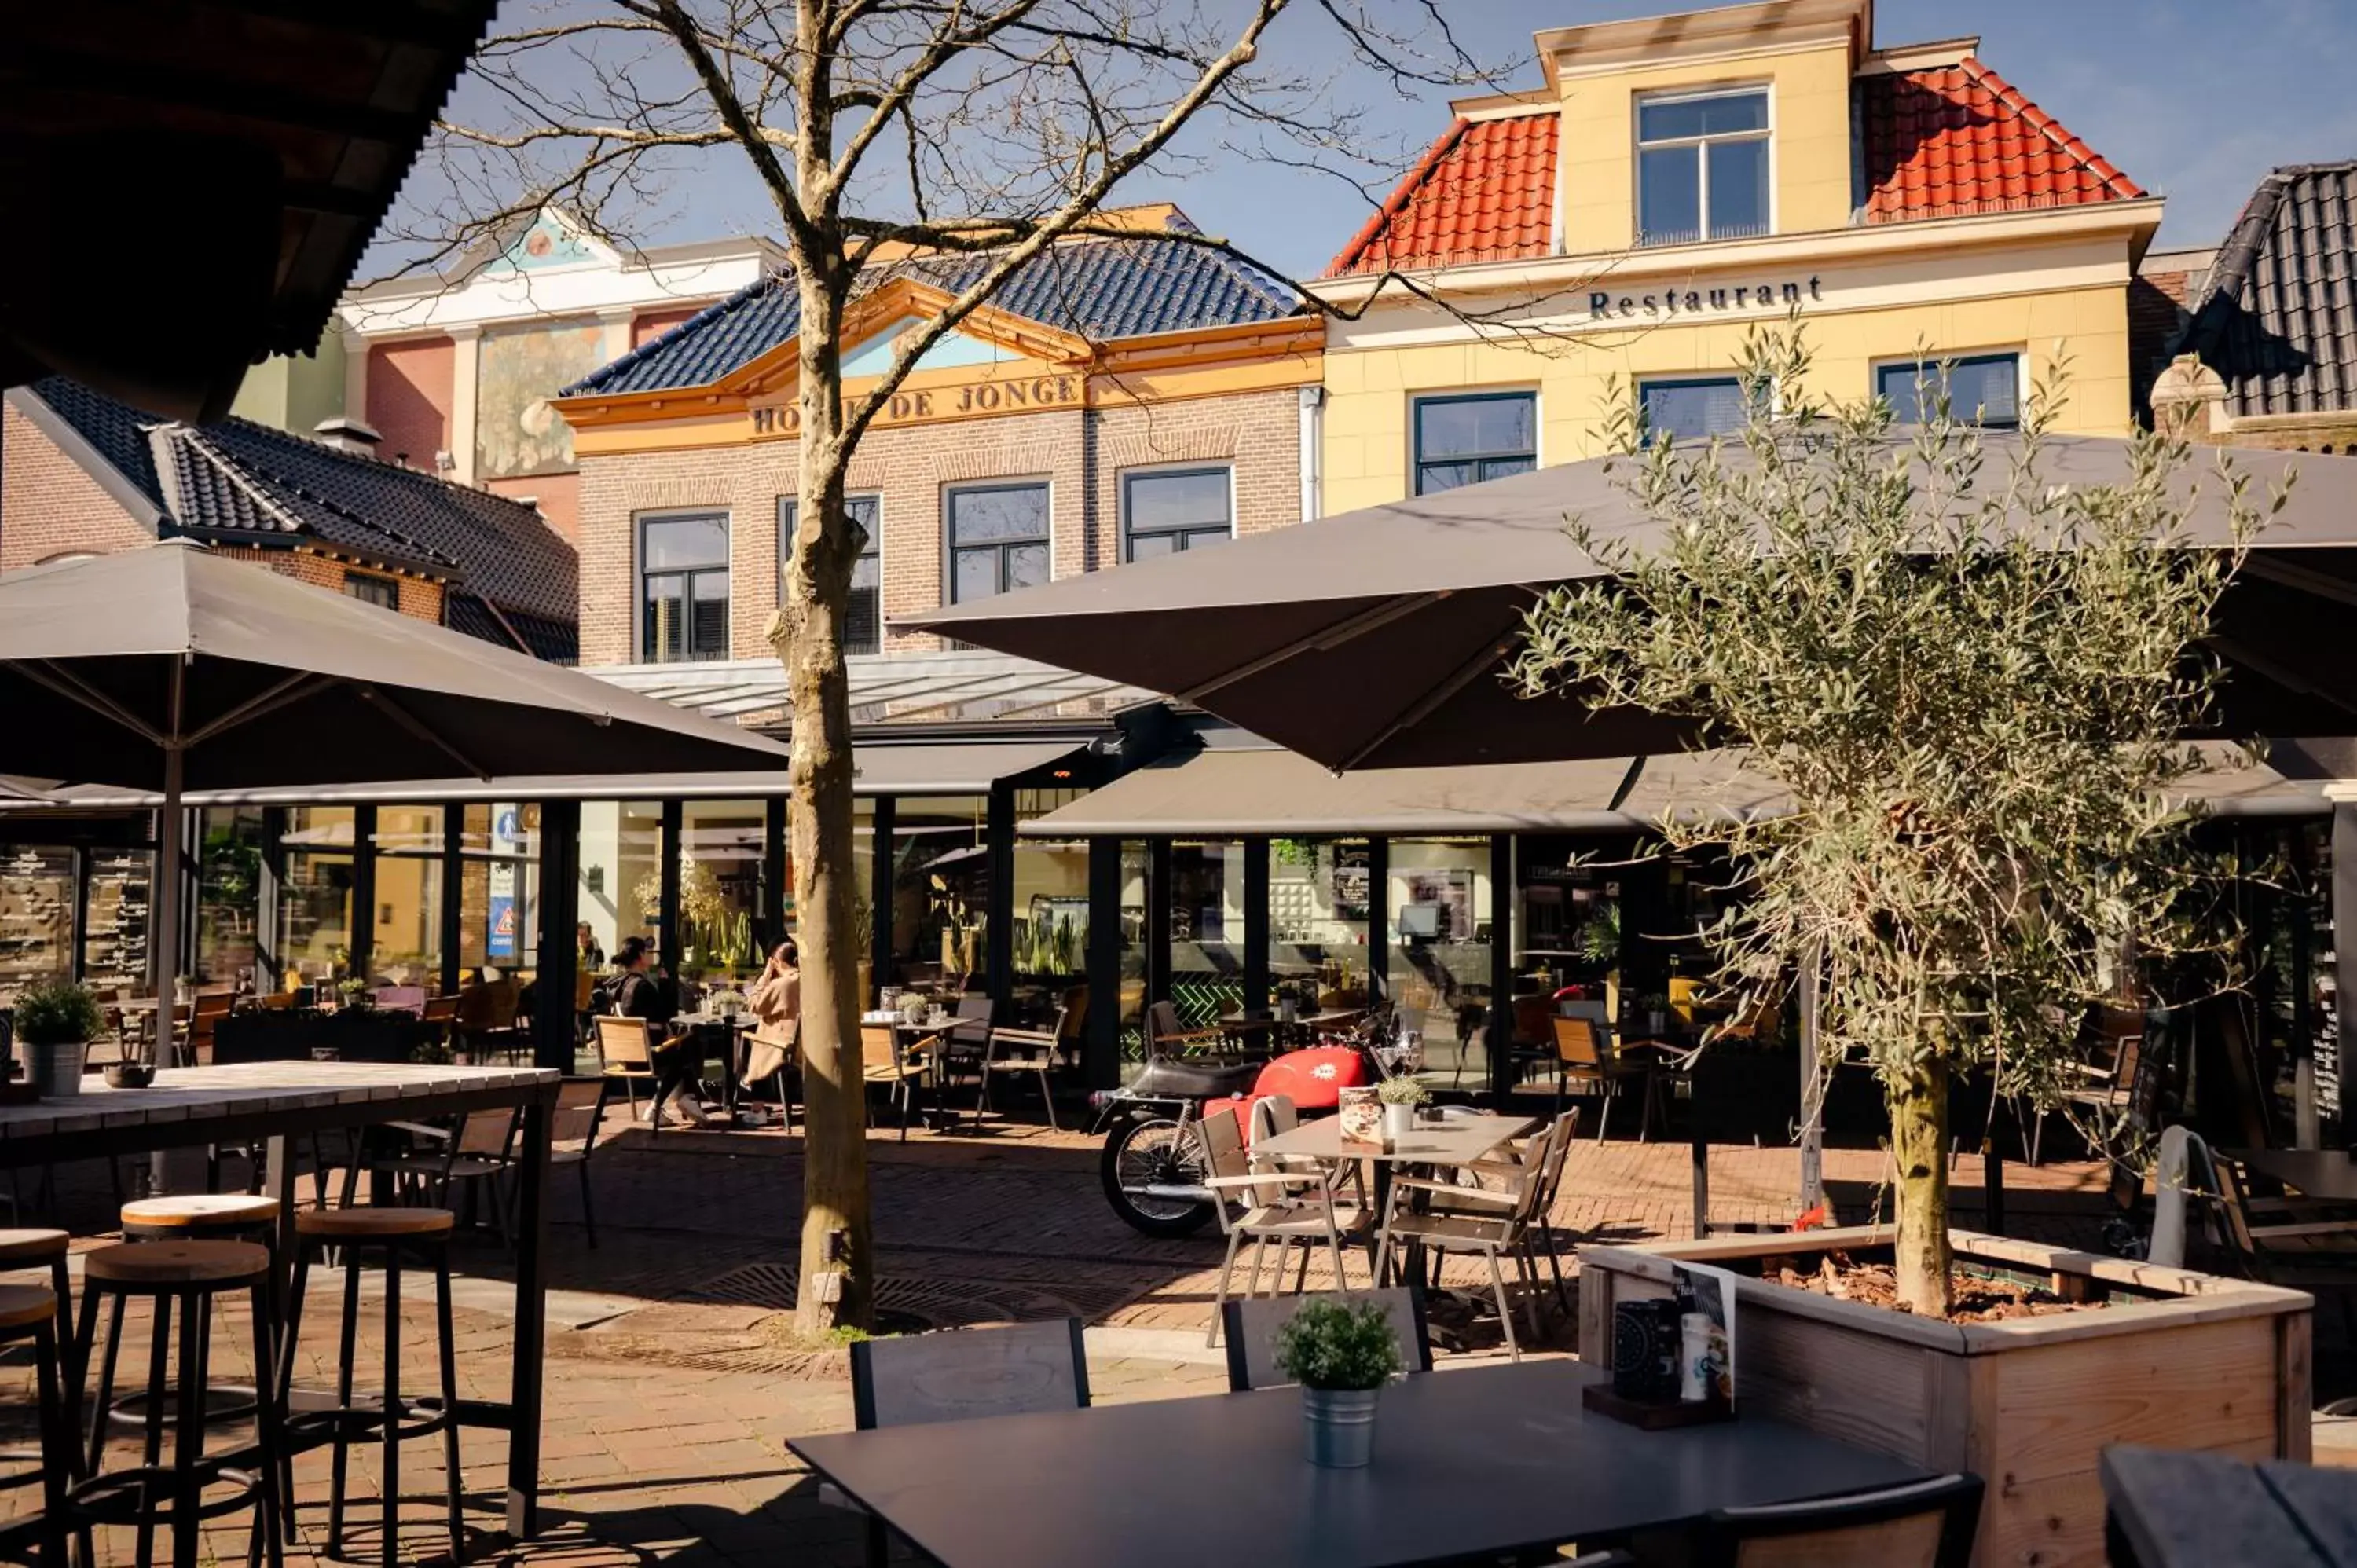 Restaurant/Places to Eat in City Hotel de Jonge